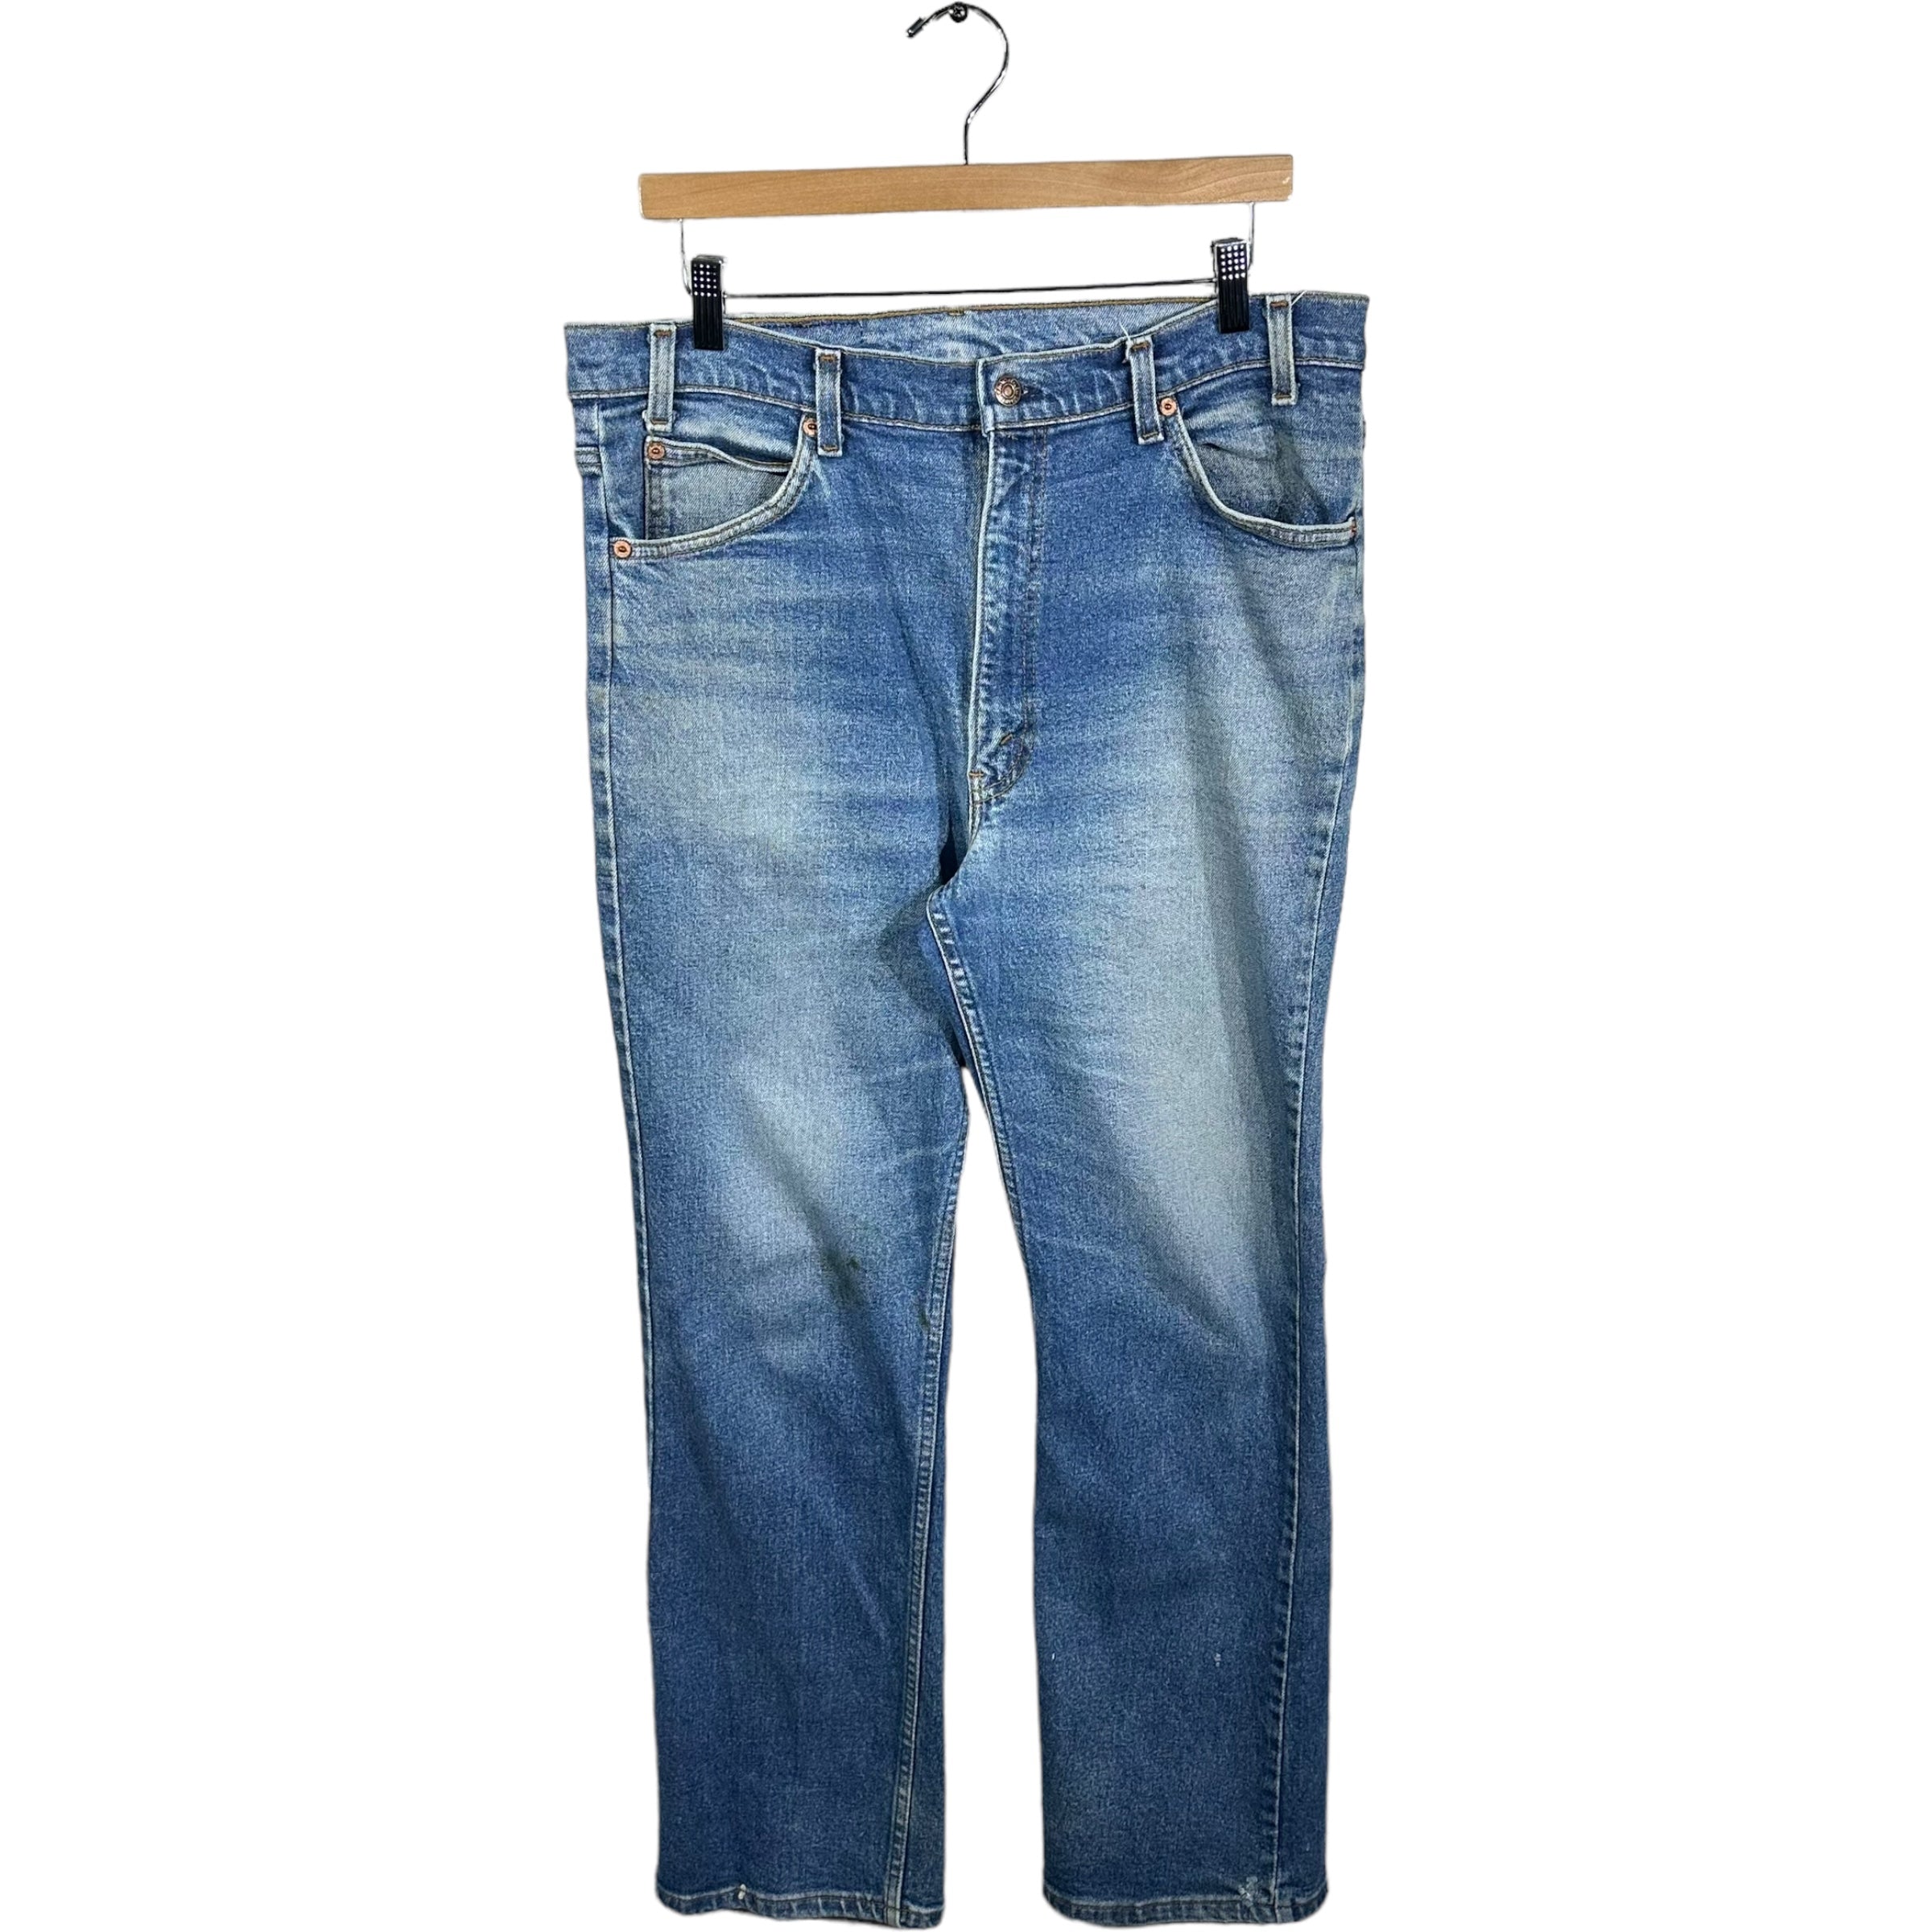 Vintage Levis Straight Leg Denim Jeans